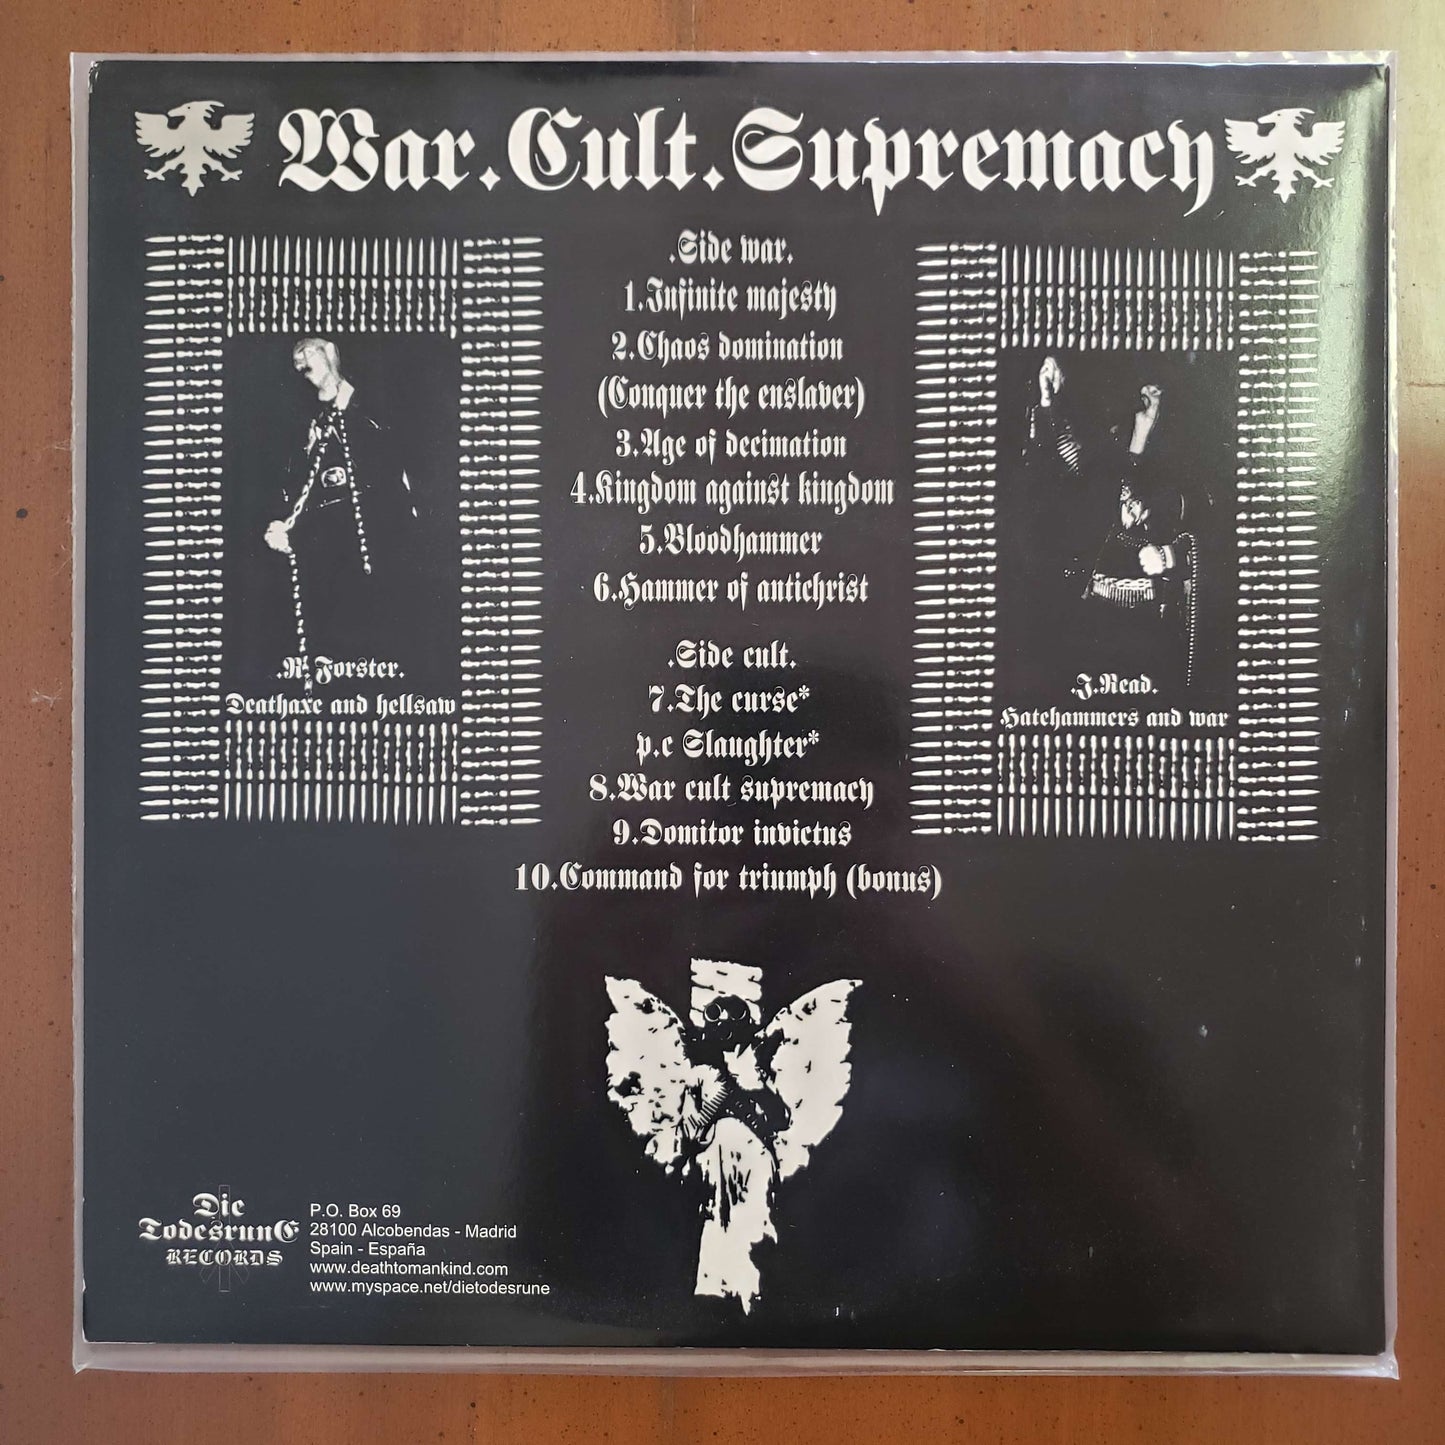 Conqueror - War.Cult.Supremacy - 2009 reissue LP